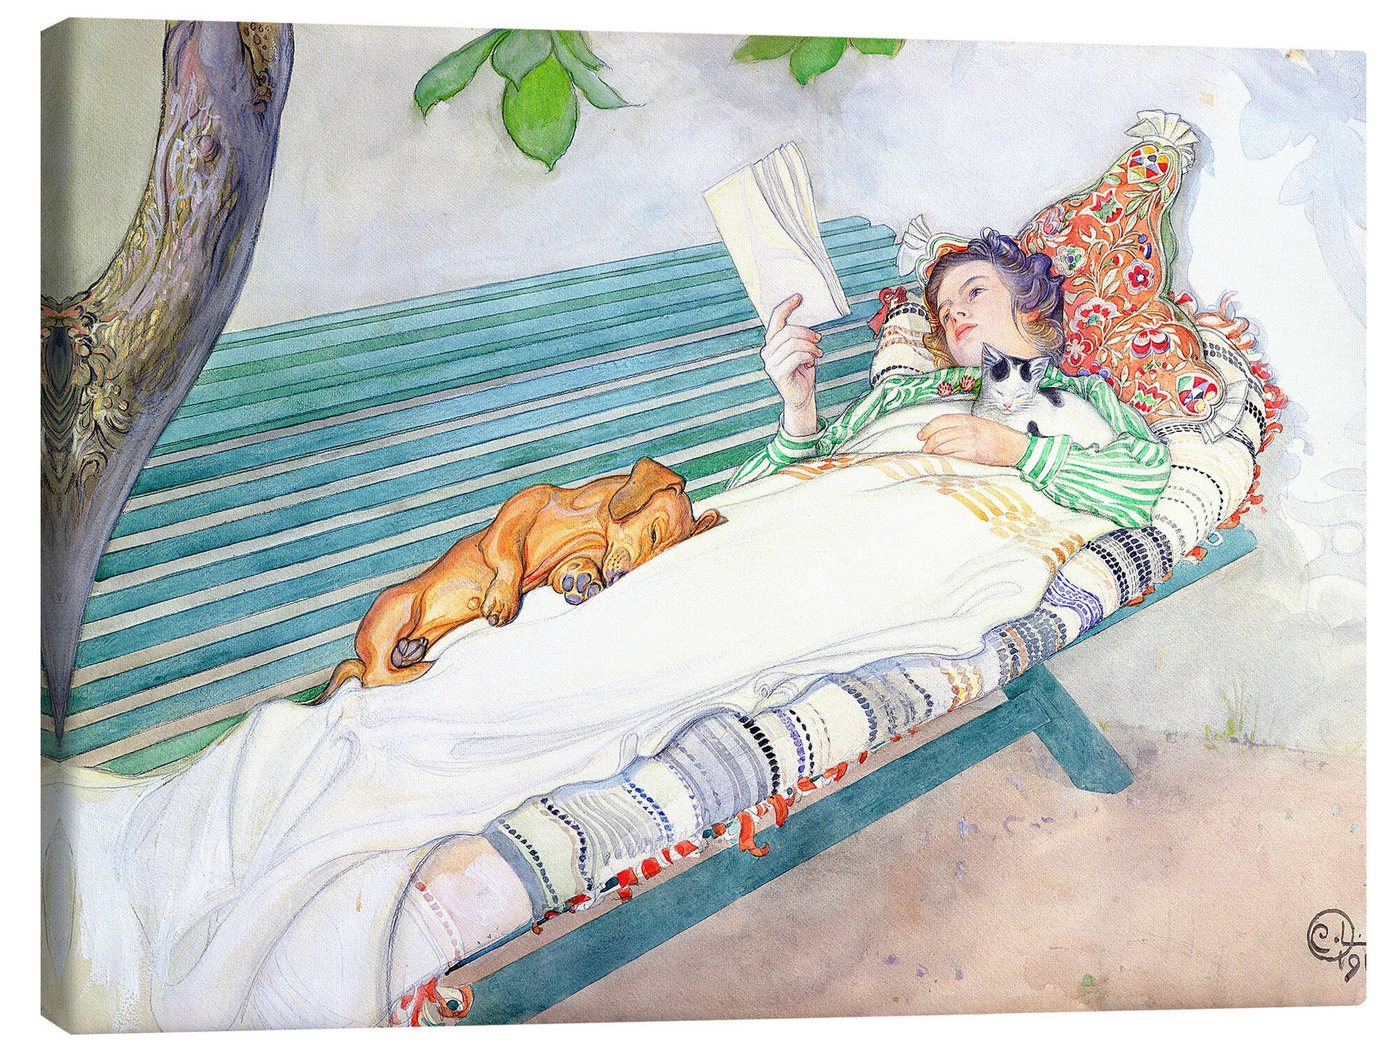 Posterlounge Leinwandbild Carl Larsson, Auf einer Bank liegende Frau, Wohnzimmer Landhausstil Malerei von Posterlounge